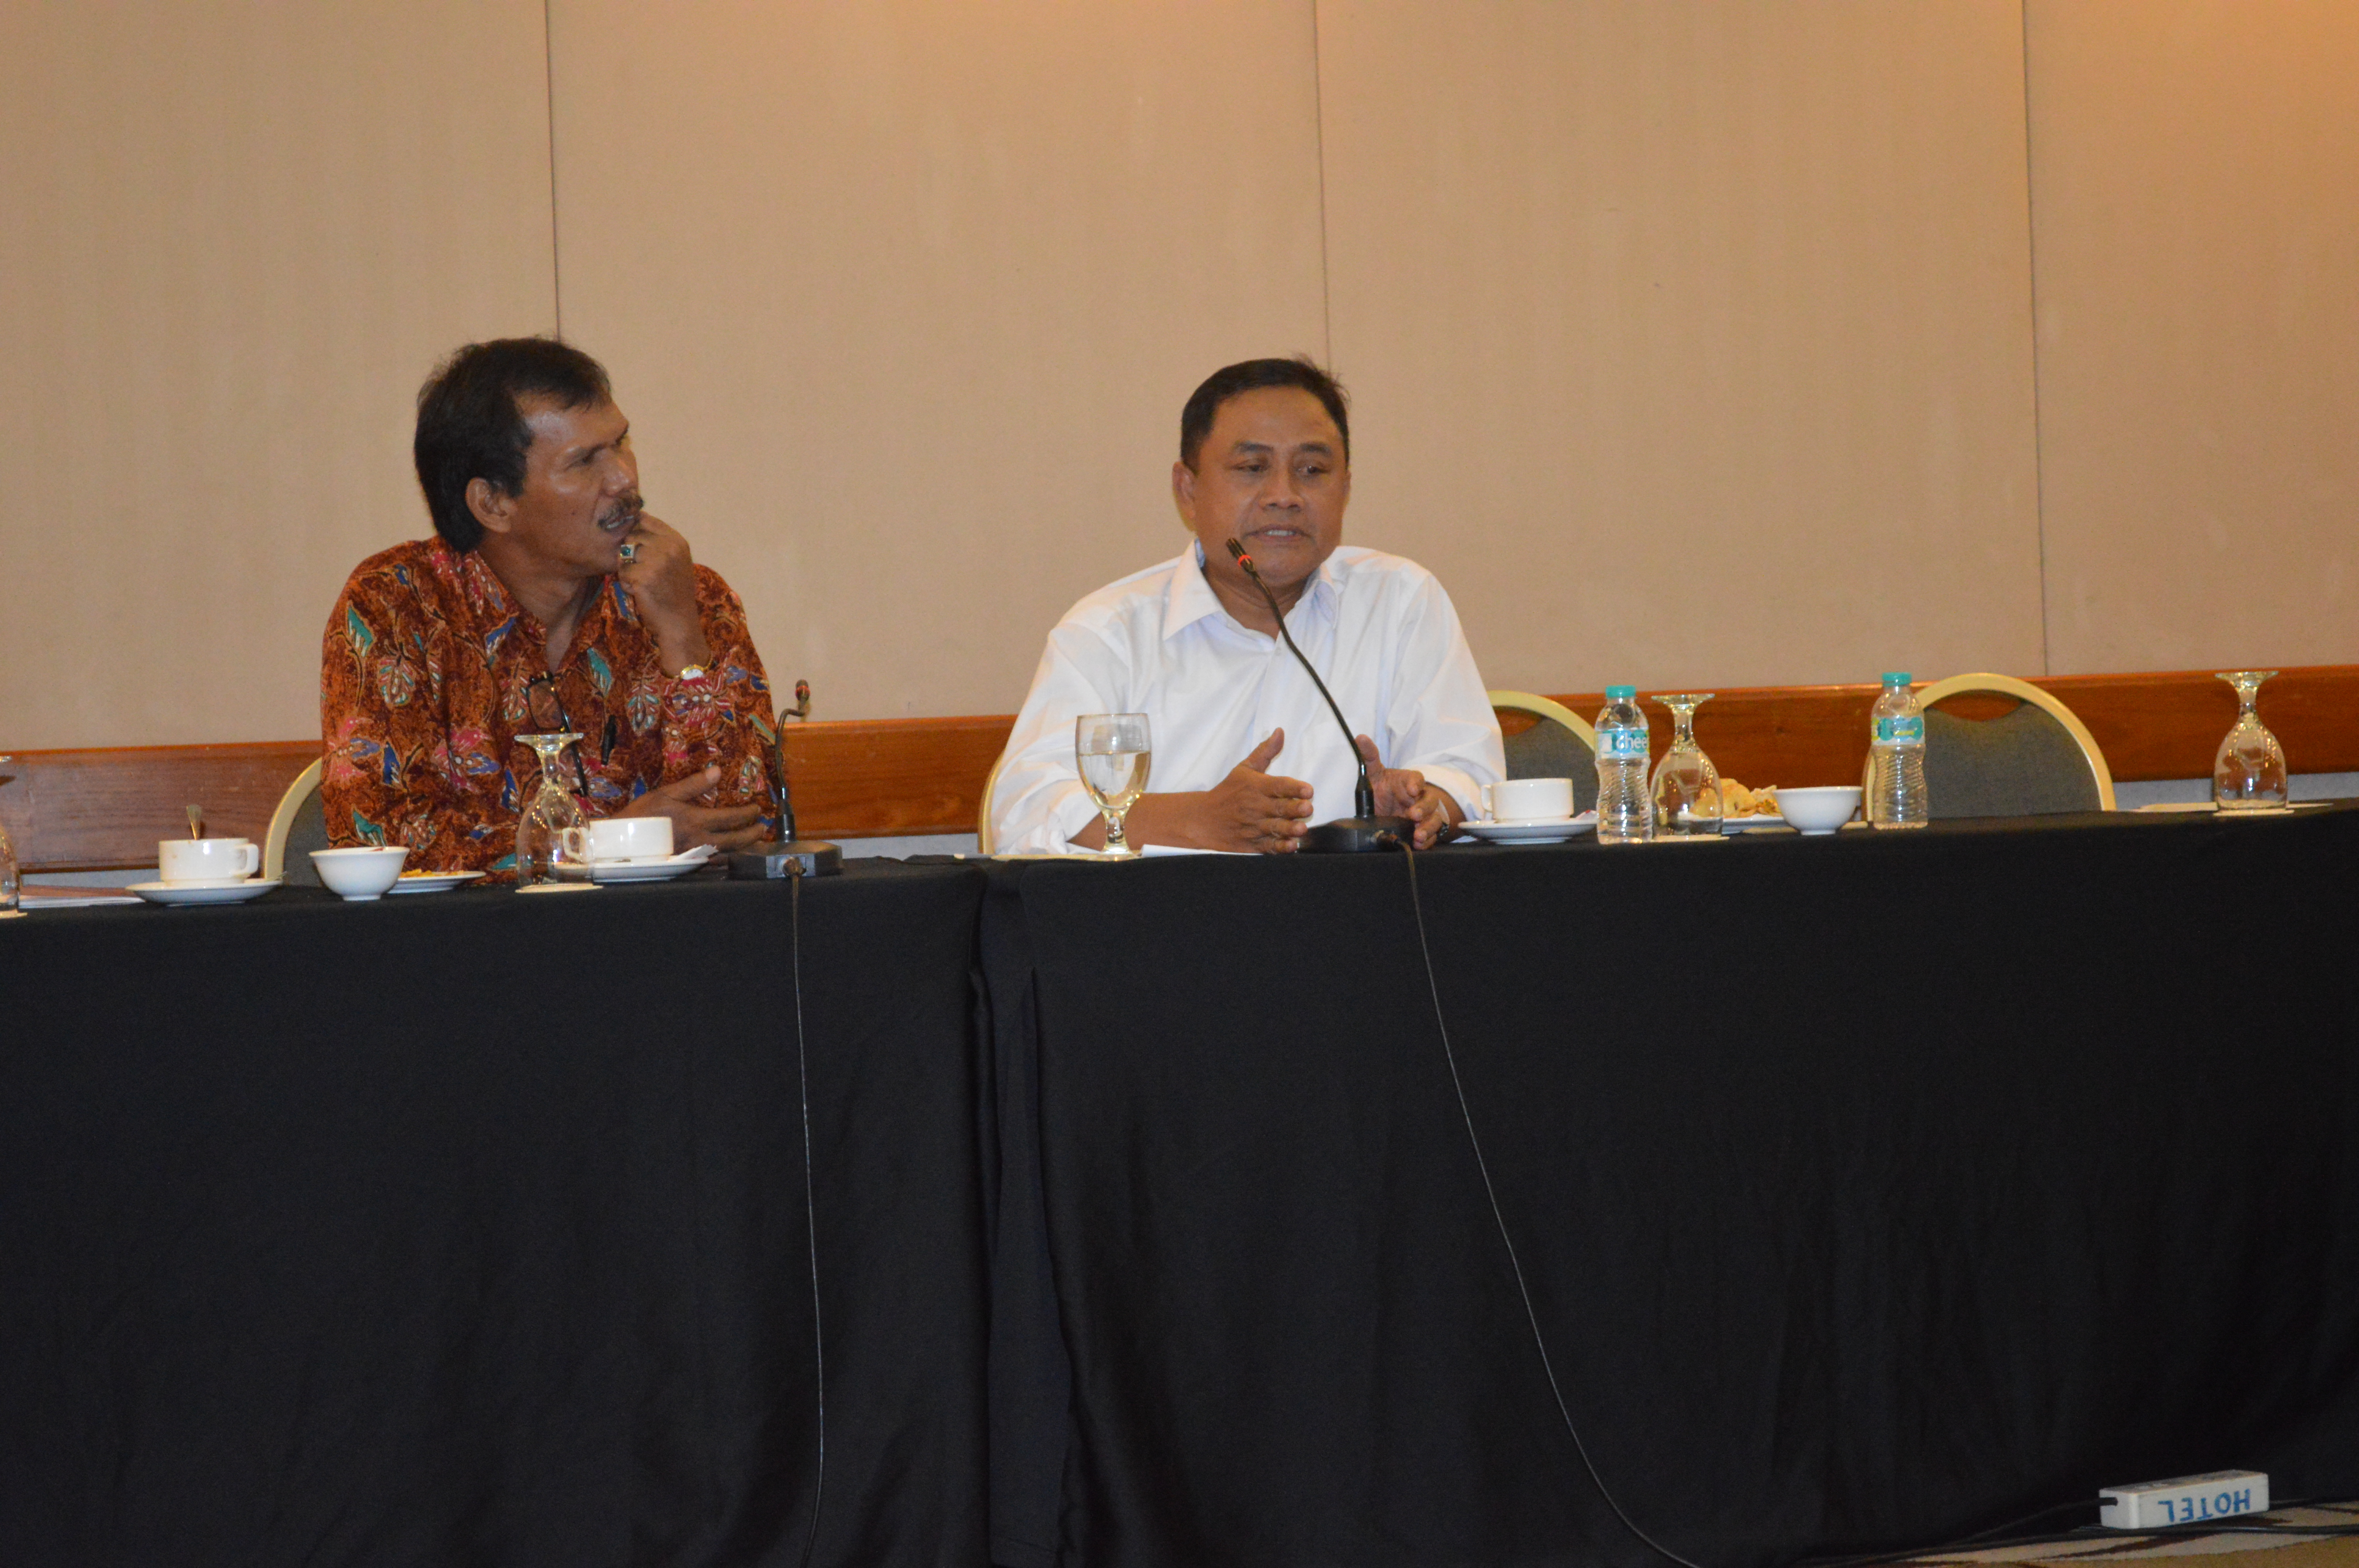 Kasi Dokumentasi, Waluyo Agus Priyanto (foto sebelah kanan)